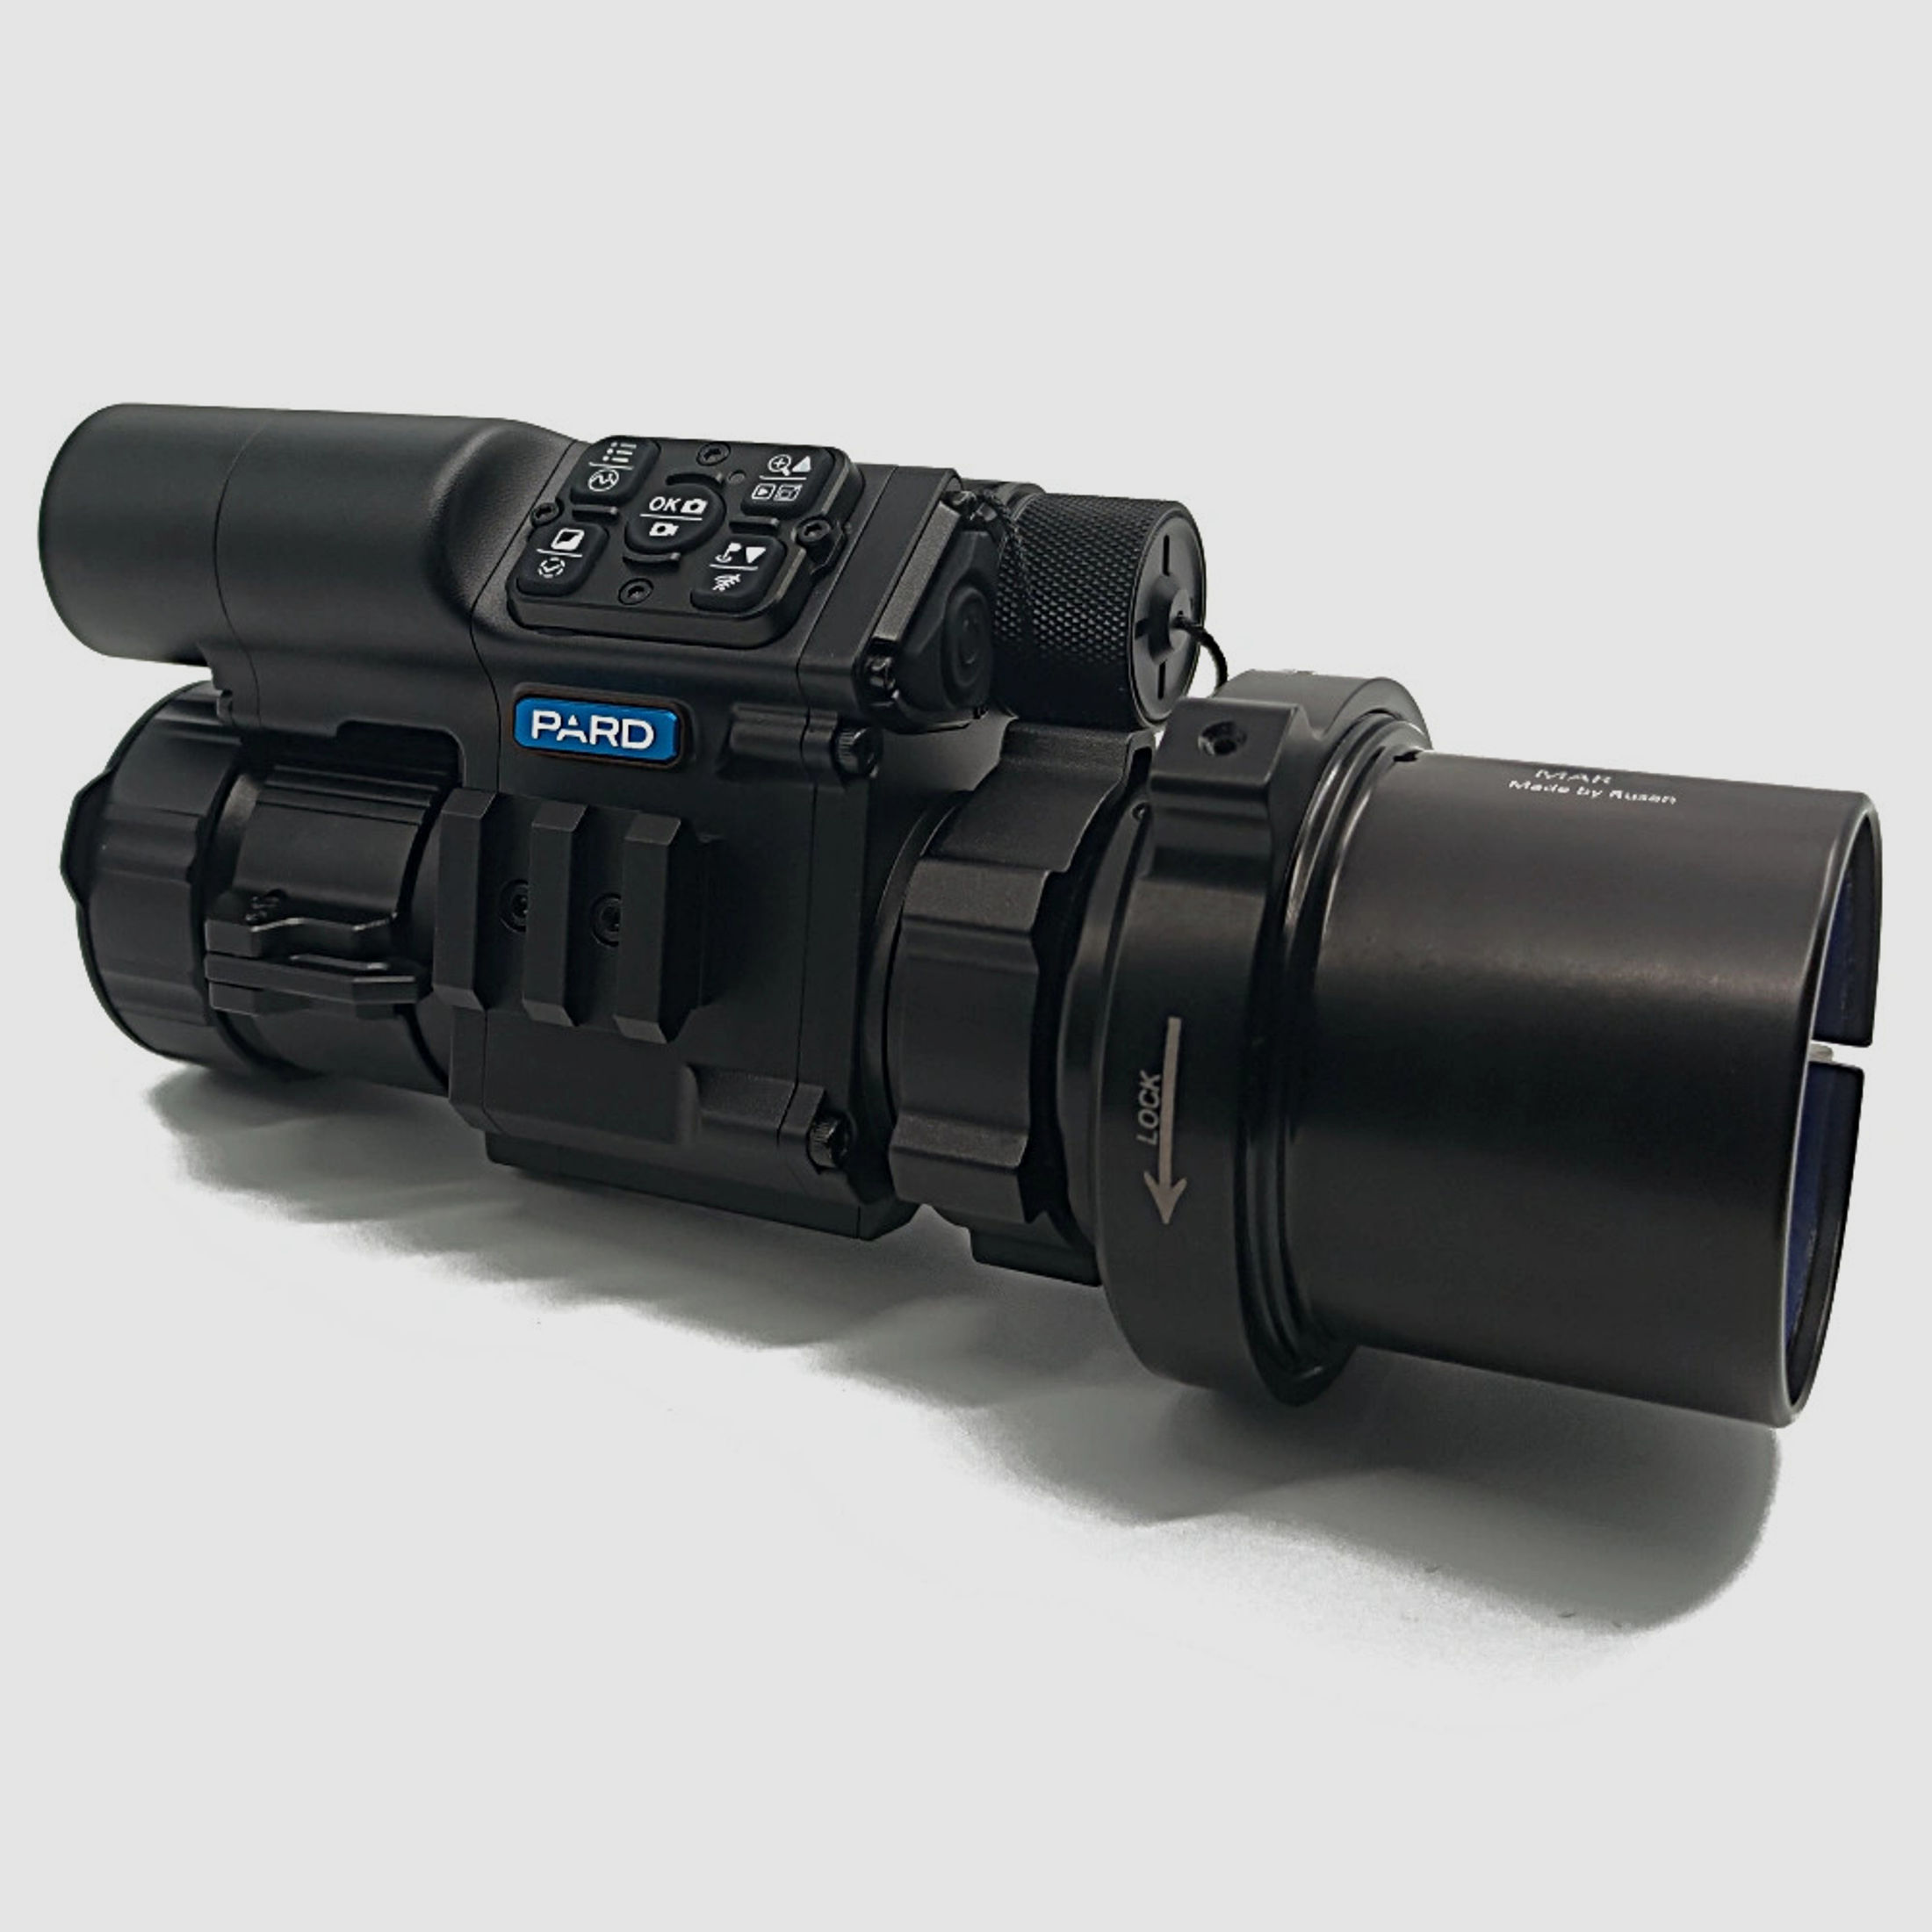 PARD FD1 Nachtsicht 3 in 1 Vorsatz, Monokular & Zielfernrohr - 850 nm mit LRF 50 mm RUSAN MAR + RUSAN MCR